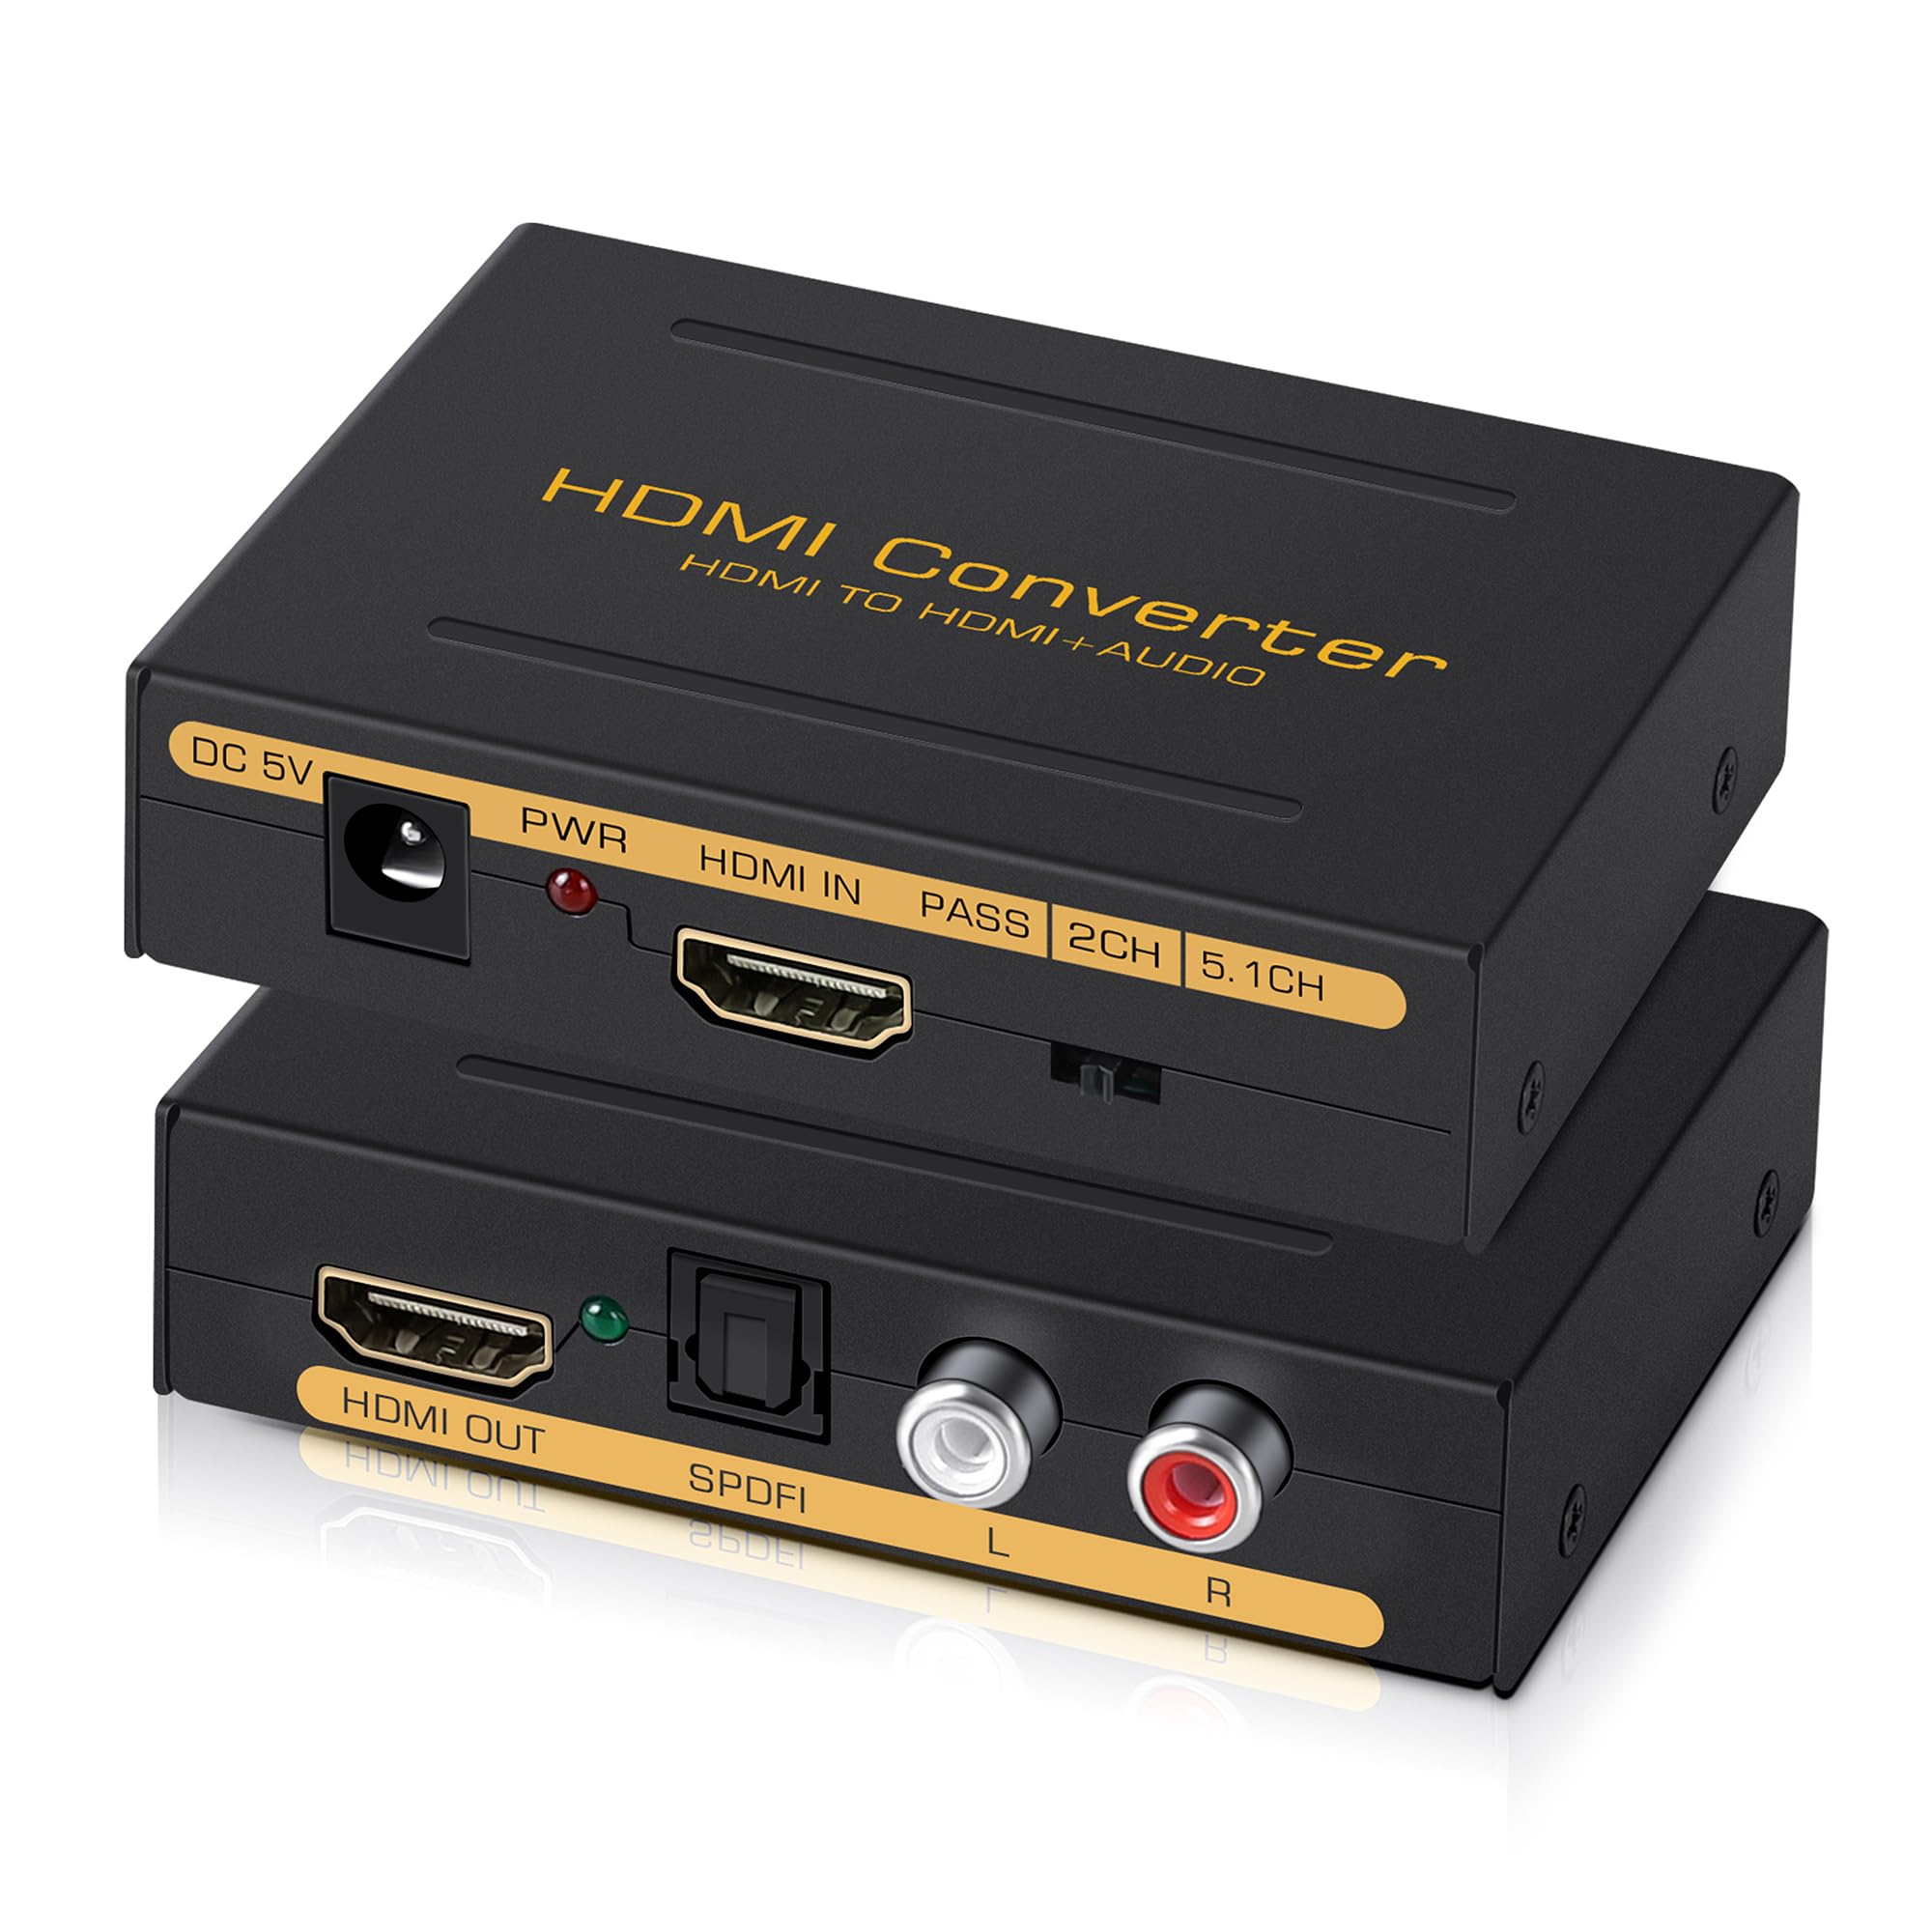 商品情報商品の説明主な仕様 ?【HDMI音声分離機】 本avedio links HDMI音声分離器は、HDMI信号から音声信号を抽出して、光デジタル（Optical）、アナログ音声（RCA）に分配して出力することができます。音声出力自体がない表示装置（例えばモニター）に非常に適しており、アンプ、サウンドバー、スピーカーやヘッドフォンと接続して音声出力を行うことができます。オーディオ信号分離の同期を実現し、音声ビデオ伝送のハイビジョンとロスフリーを確保できます。br?【4K@30Hz高解像度対応】 HDMIオーディオ分離器4K(3840×2160)＠30Hz の高画質映像を表示することができます。フルHD 1080P、3D、および36ビットのディープカラーをサポートします。高性能、遅延なし、画像と音質の損失ない映像を楽しめます。高画質の映像と高音質の音声を同時に楽しむことができます。ご注意：テレビからの入力で音声分離は出来ません。br?【3つのオーディオモード】 音声出力分離器のオーディオモードには、PASS、2.0CH、5.1CH三の音声モードがあります。Pass：ソース機器からのHDMI音声信号を本hdmi rca 分離器に経由してそのままに出力します。2CH：PCM、LPCM、ステレオオーディオフォーマットのみ対応しています。ご利用のモニター/アンプ/スピーカーが5.1CHに未対応の場合、このモードに選べてください。5.1CH：モニタ/アンプ/スピーカーも5.1 CHに対応できることが必要です。br?【幅広い互換性】 このHDMI 音声分離はほとんどのデバイスと互換性があります。 HDMI入力：Blu-rayプレーヤー、DVD、HDプレーヤー、 Fire TV、Apple TV、PS3 / 4 Pro、Xbox、PC /ラップトップ、HDカメラ、Chromecast、Fire Stick、Roku、HDDVRなど。 HDMI出力：フルHD TV、モニター、プロジェクター。オーディオ出力：スピーカー、アンプ、サウンドバーまたはその他のサウンドシステム。br?【1年間の保証とアフターサービス】-4K HDMI音声分離器 x 1、5V / 1A DC電源アダプター x 1、取扱説明書 x 1。注：ご不明な点がございましたら、お気軽にお問い合わせください。24時間以内に最速かつ最も効率的なサービスを提供します。